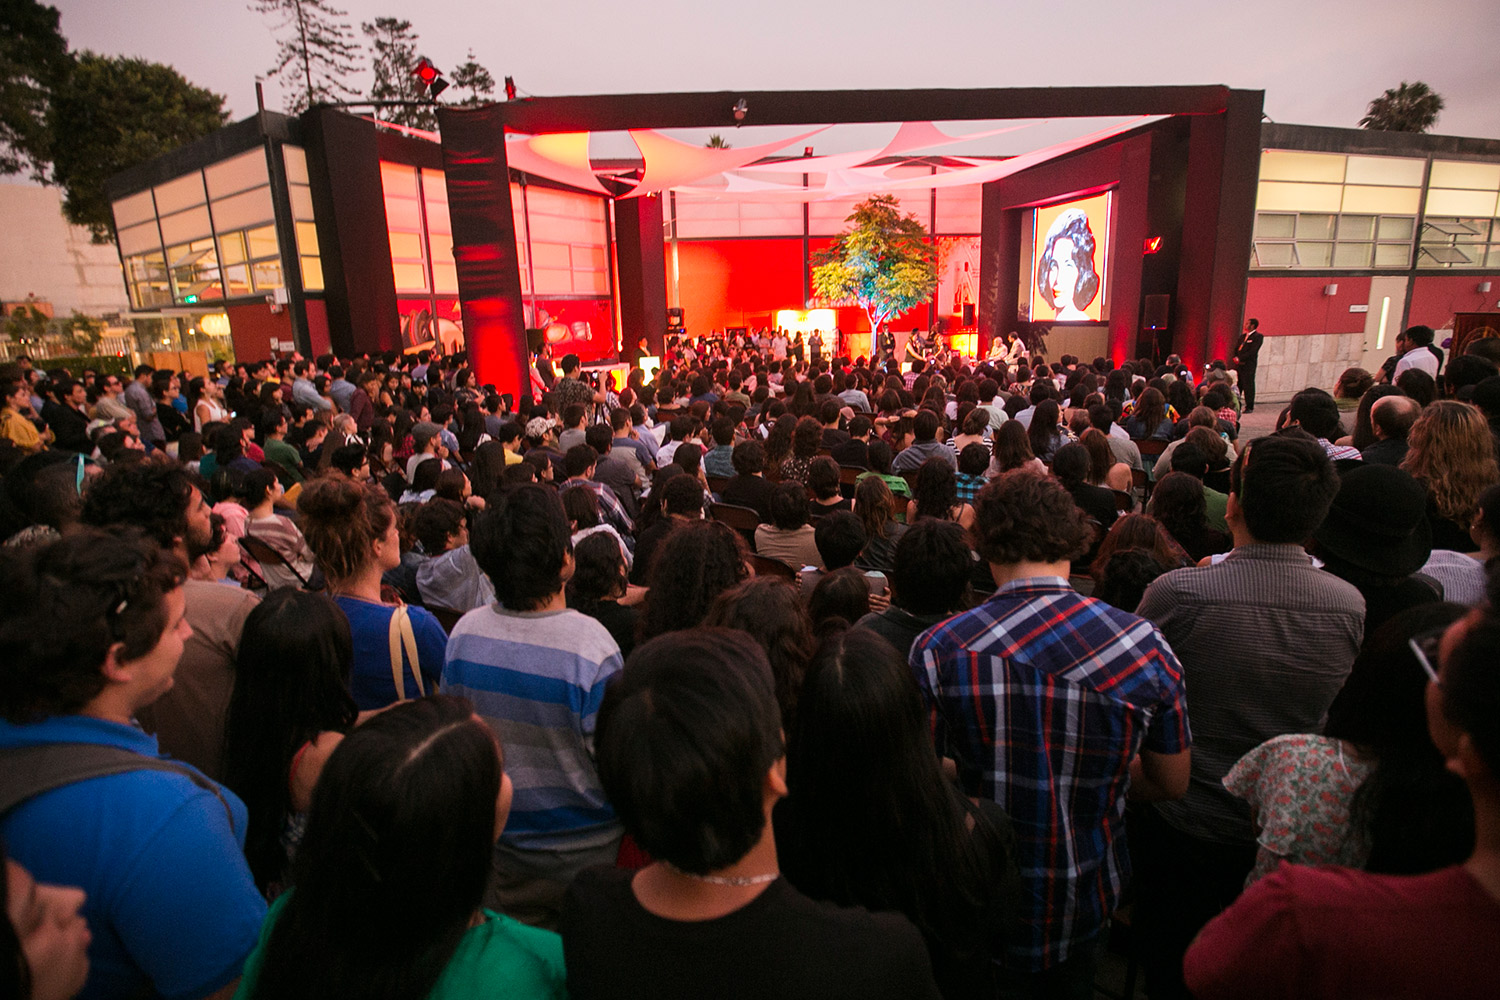 David LaChapelle | MAC LIMA, Lima, Peru, January 23 - April 13, 2015 | 2